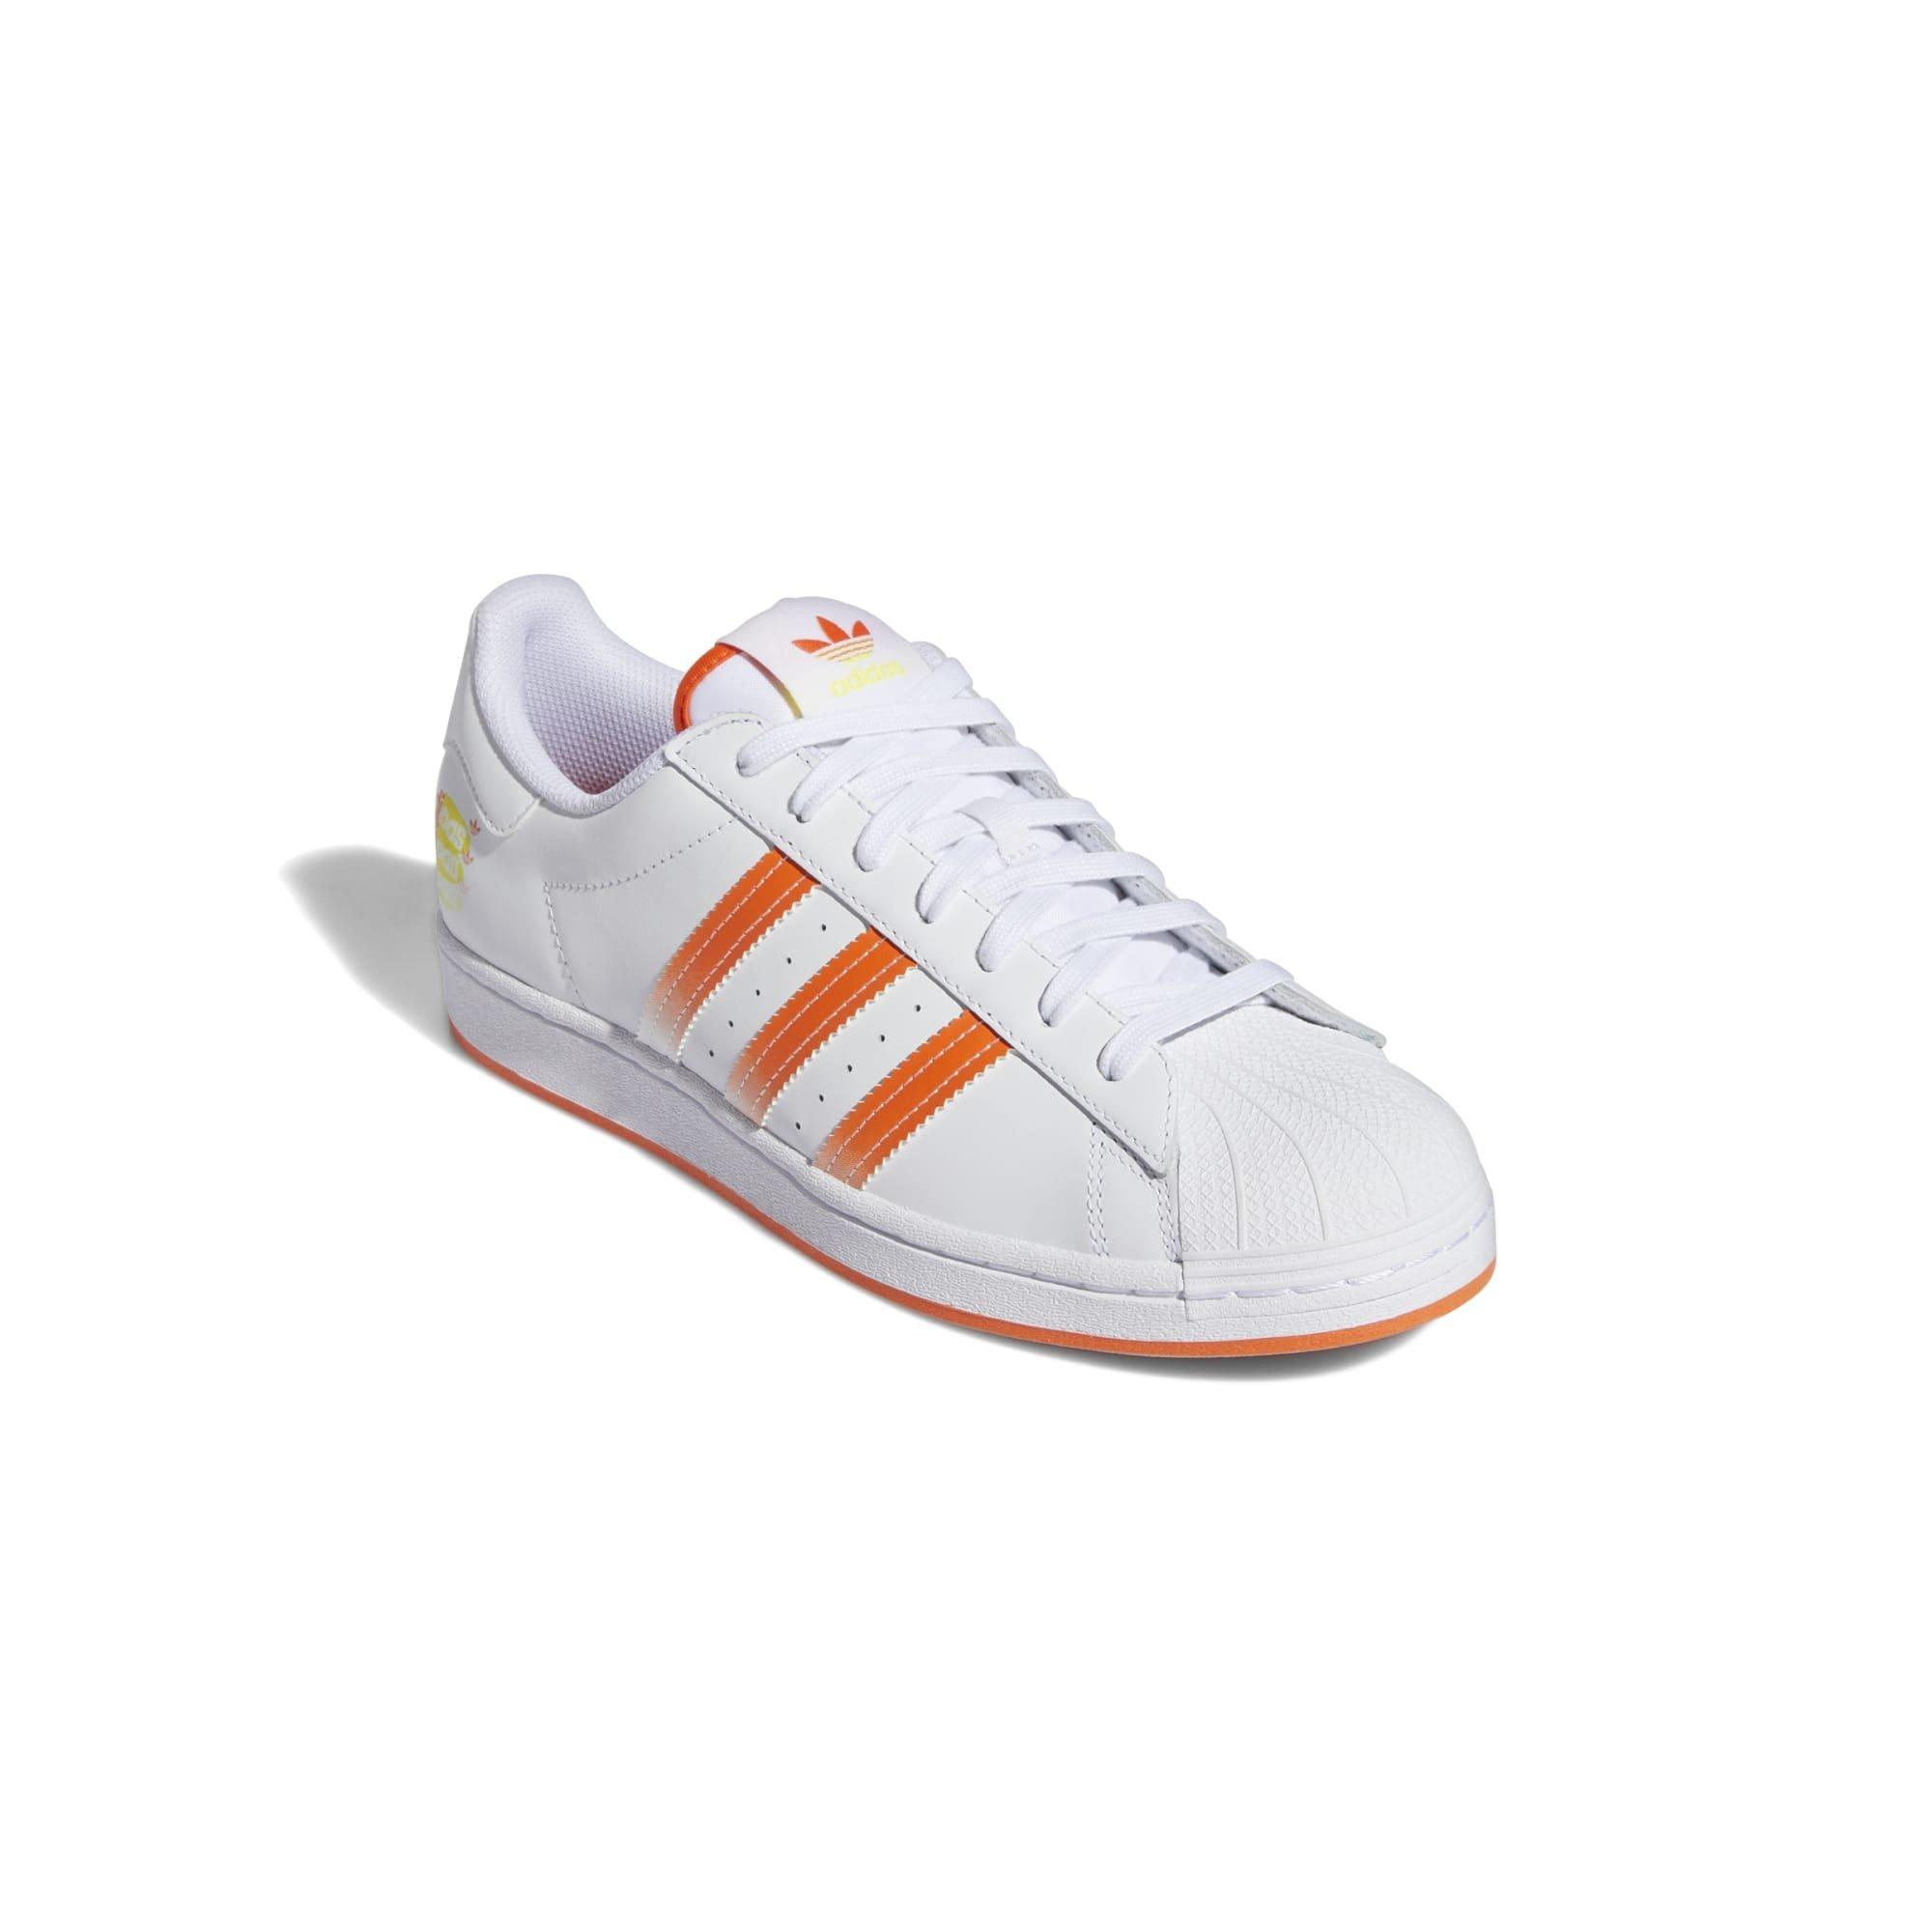 adidas Superstar White/Orange Men's Shoe - Hibbett